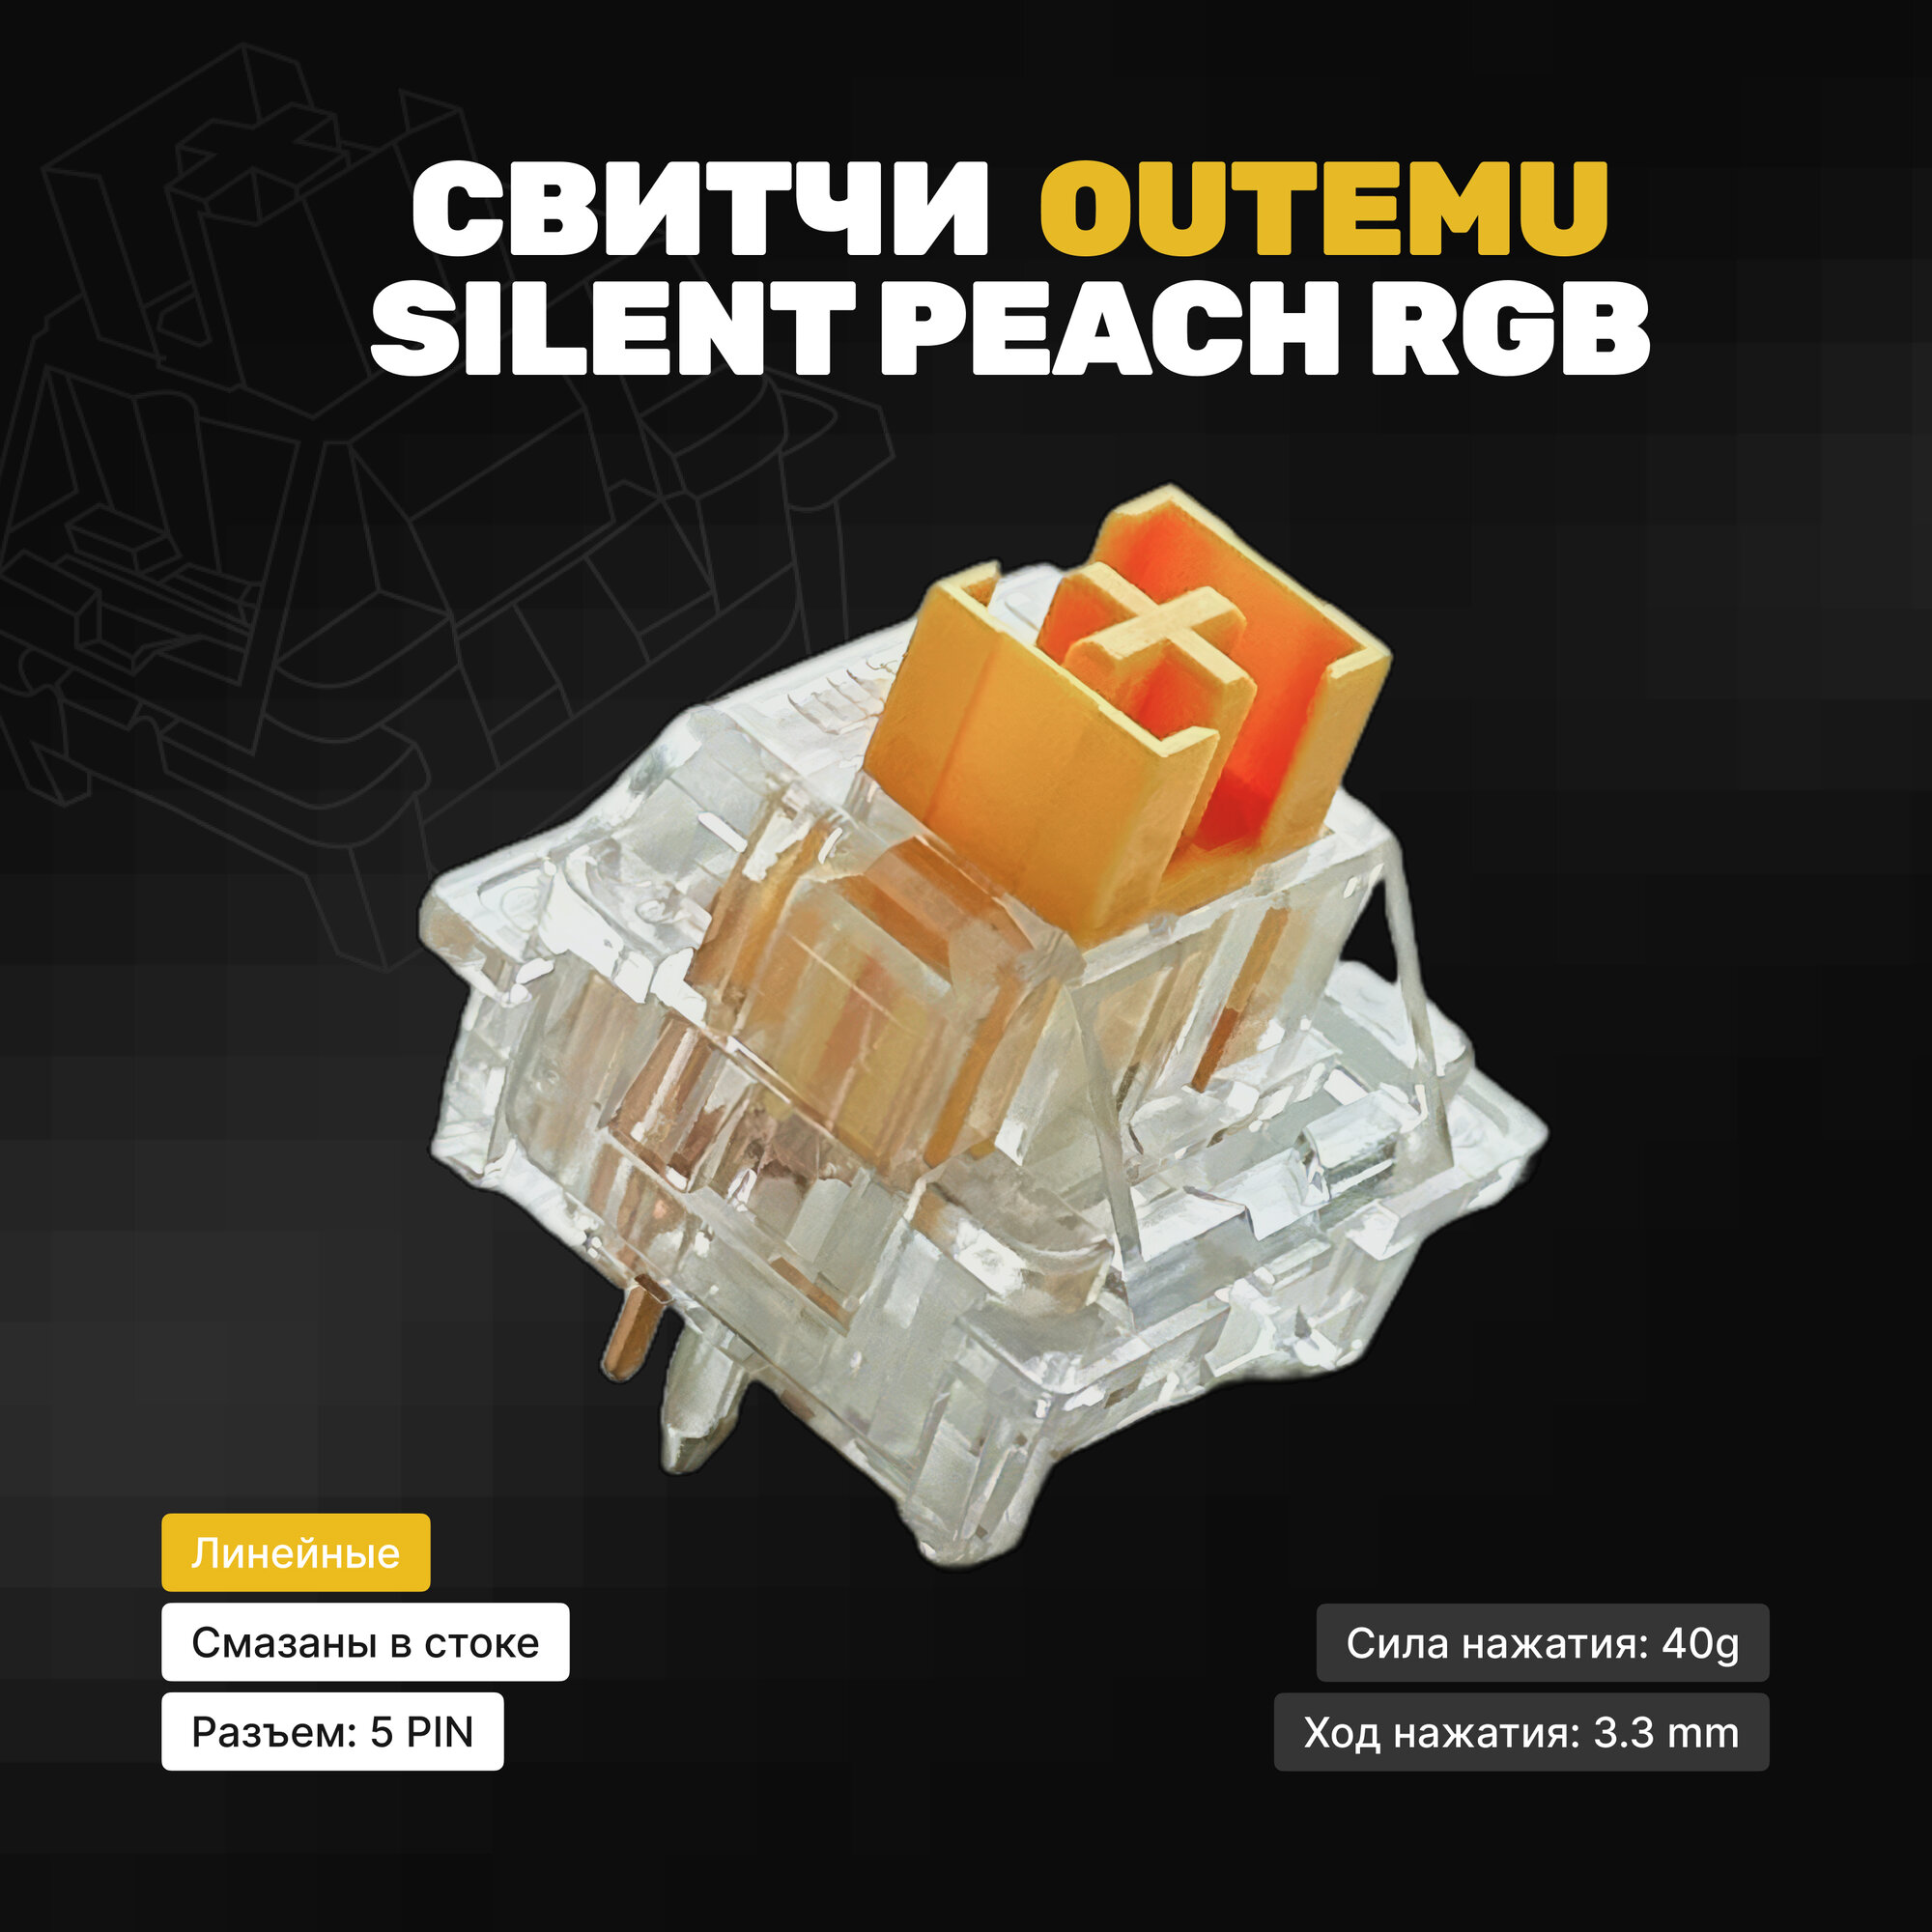 Механические переключатели Outemu Silent Peach RGB (90 штук) линейные 5-pin40 грамм